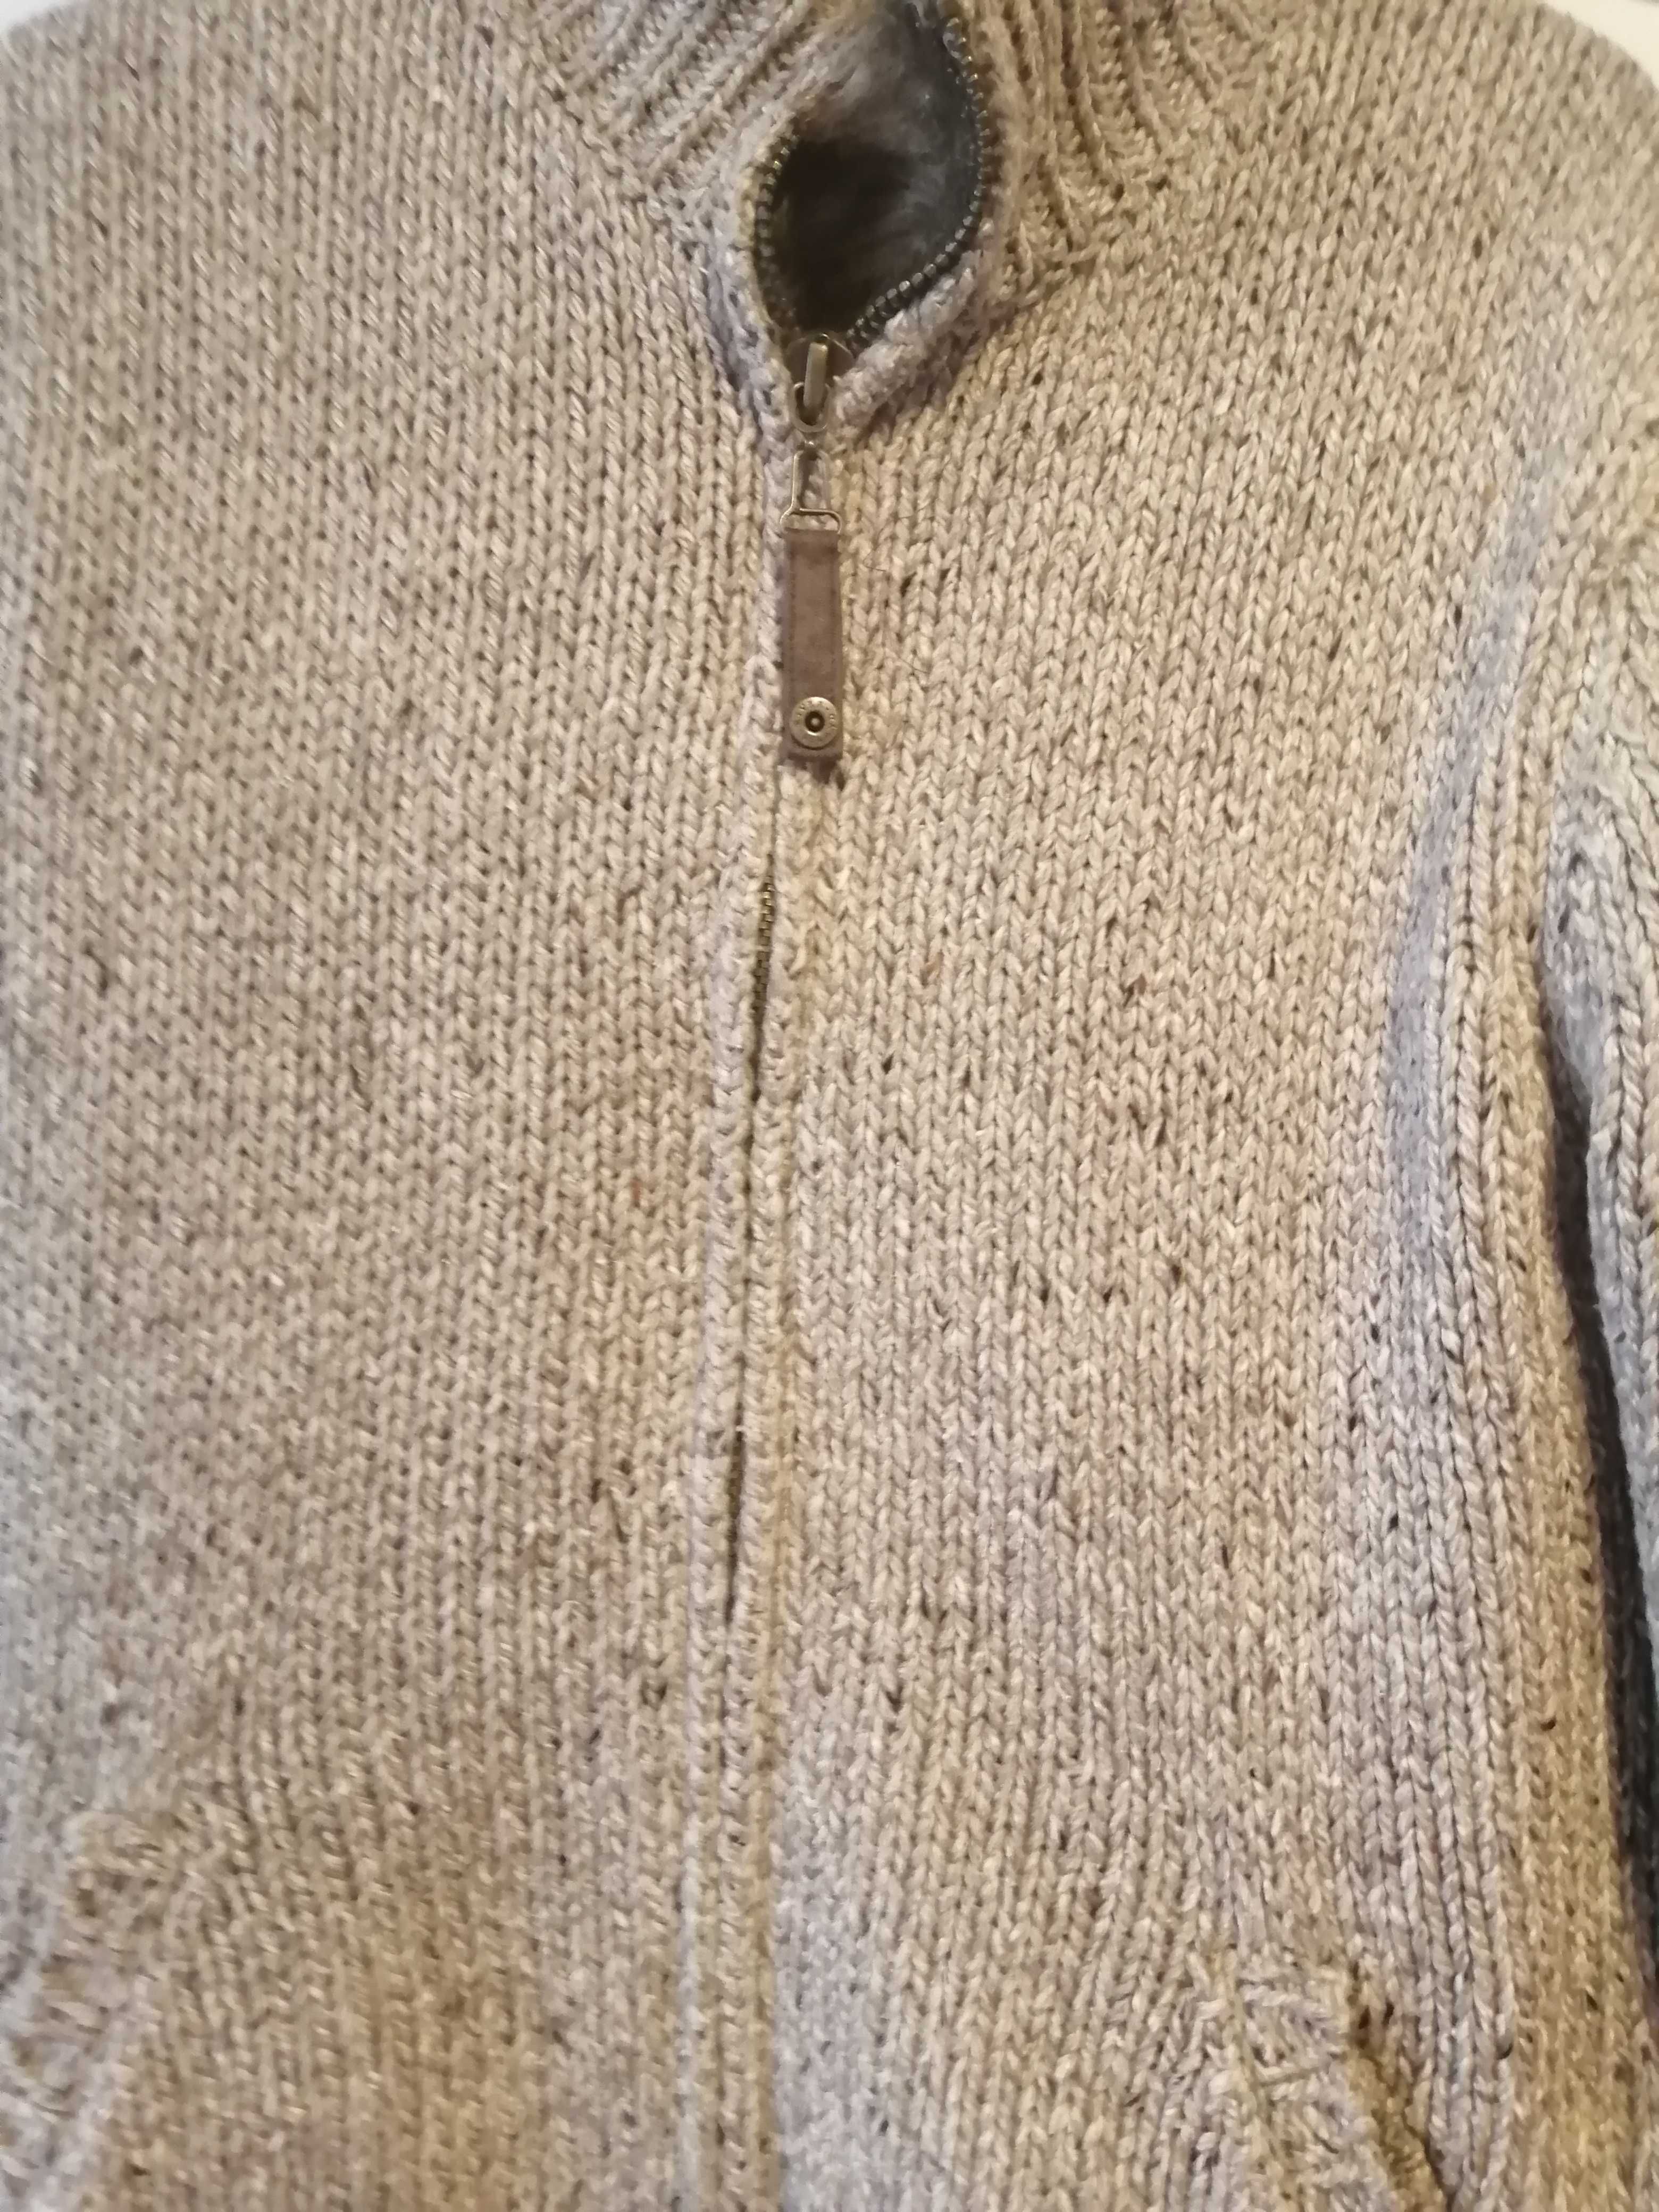 męska kurtka/sweter podbita sztucznym futrem rozmiar M